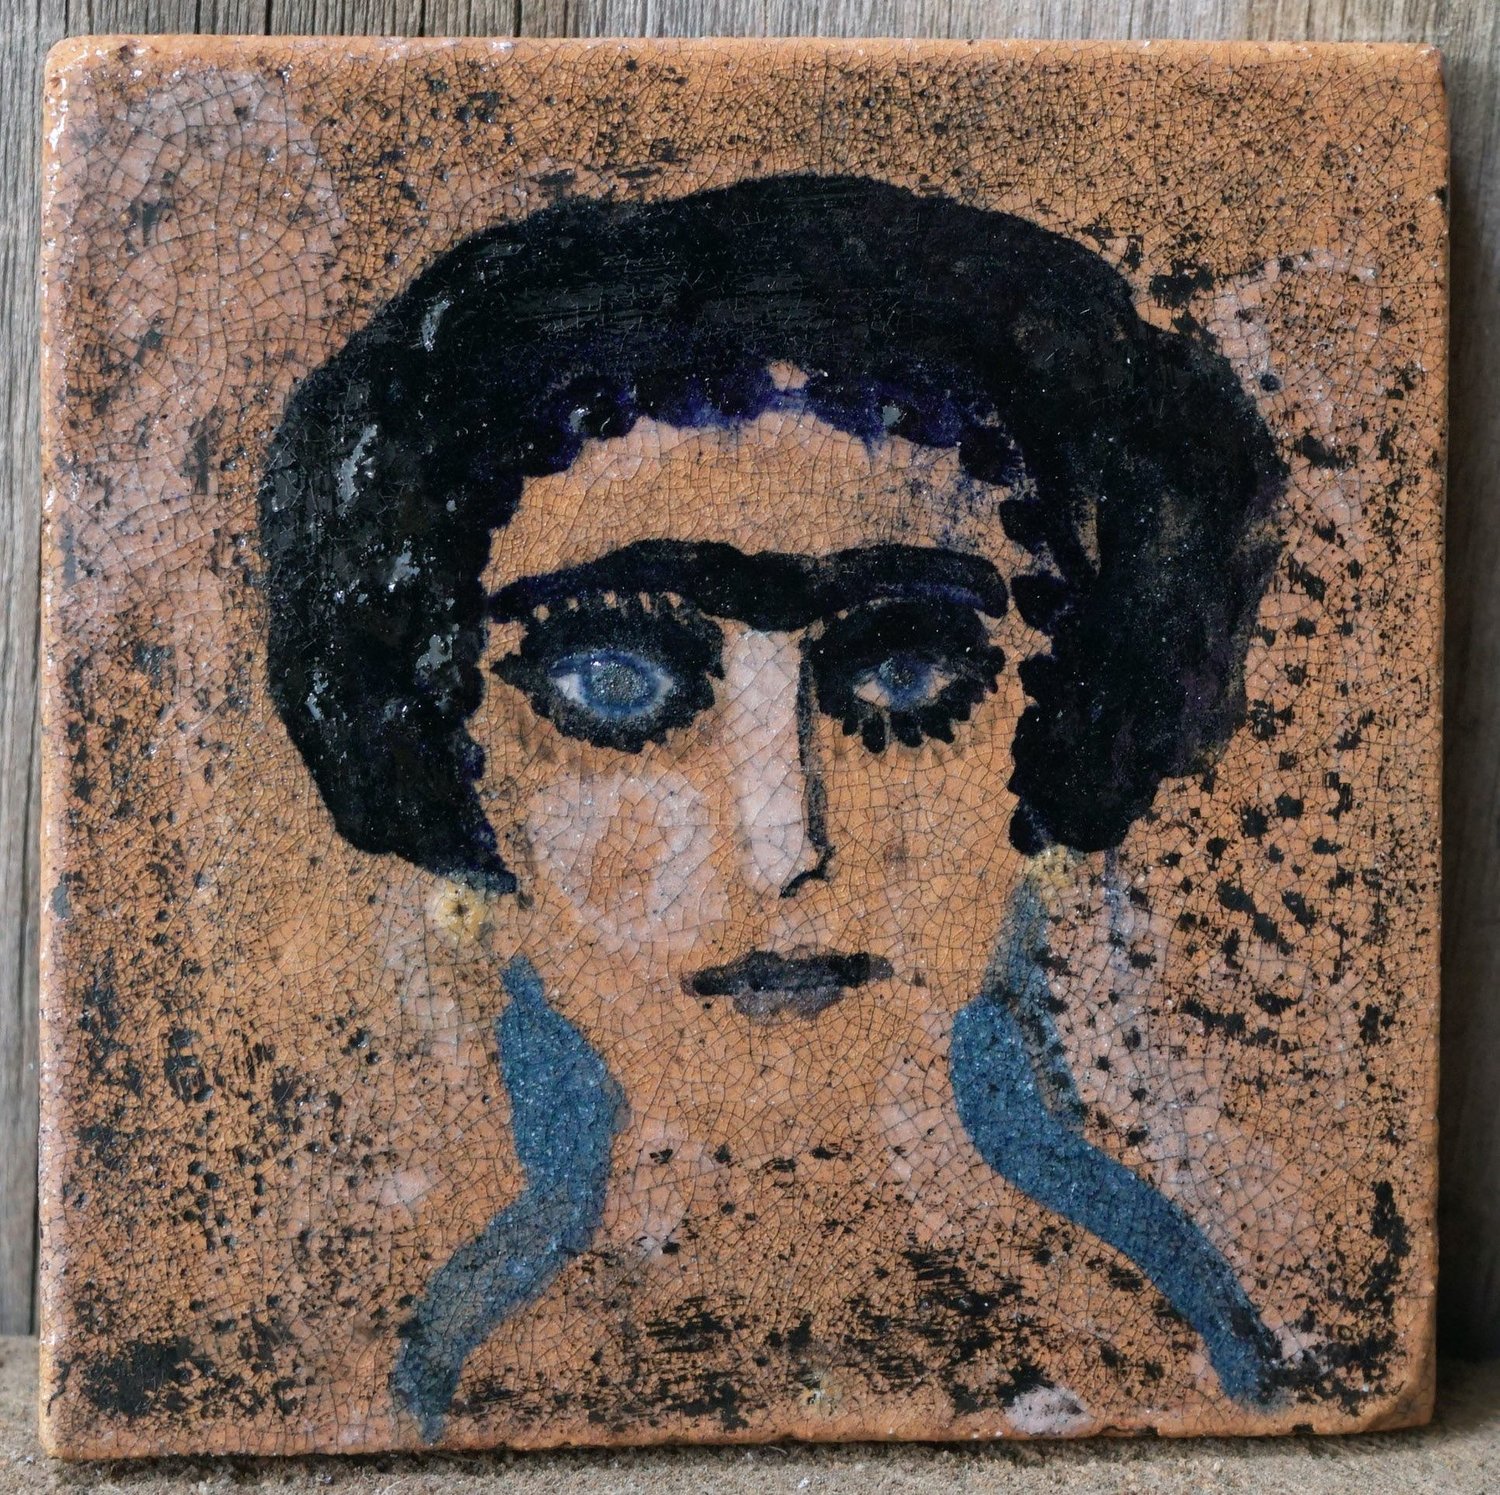 Tutu Kiladze’s “Portrait #3” is a ceramic tile.